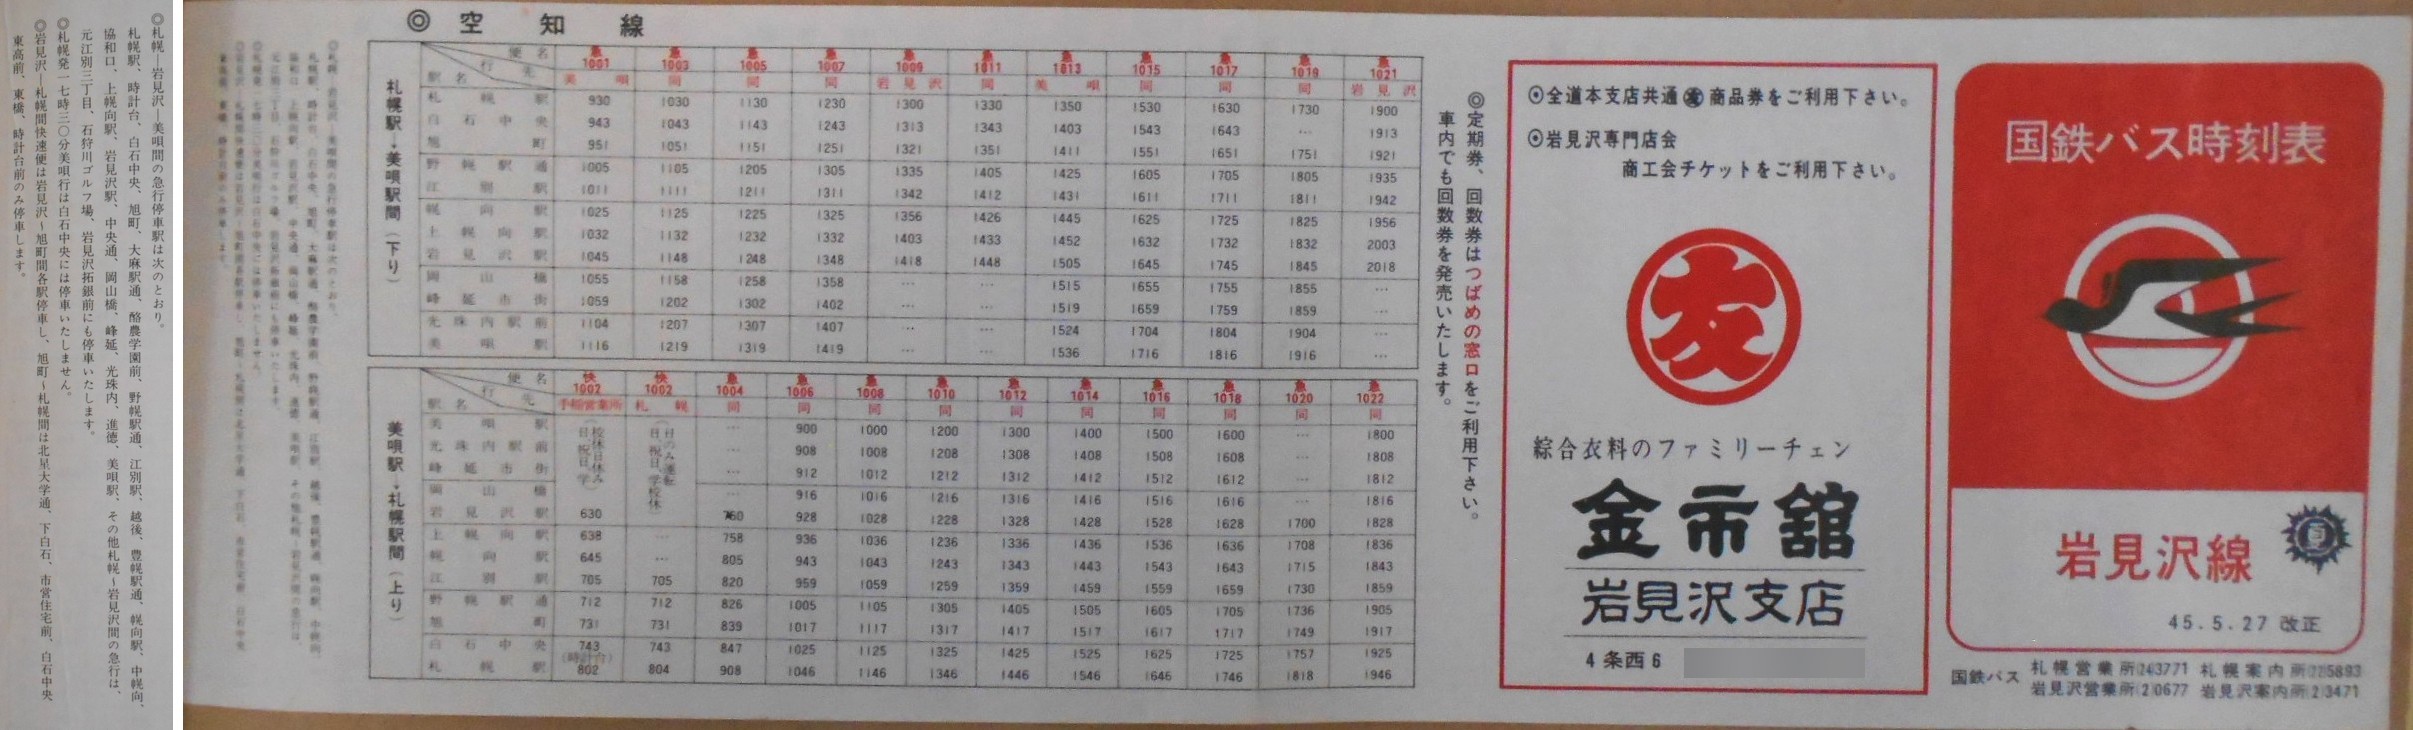 1970-05-27改正_国鉄バス_岩見沢線時刻表表面